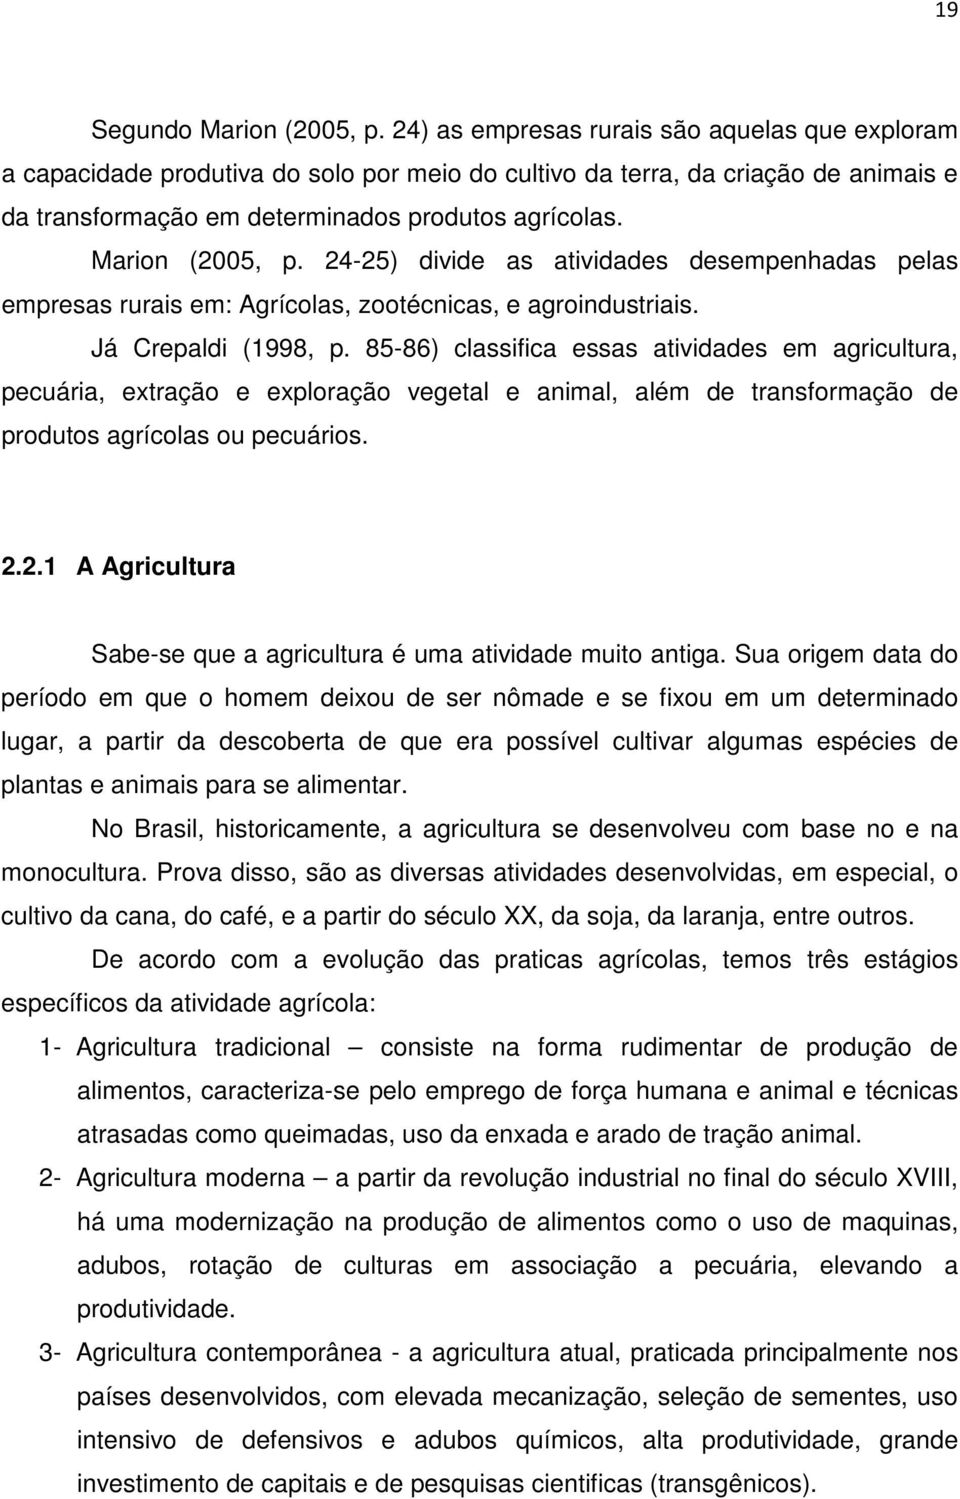 Marion (2005, p. 24-25) divide as atividades desempenhadas pelas empresas rurais em: Agrícolas, zootécnicas, e agroindustriais. Já Crepaldi (1998, p.